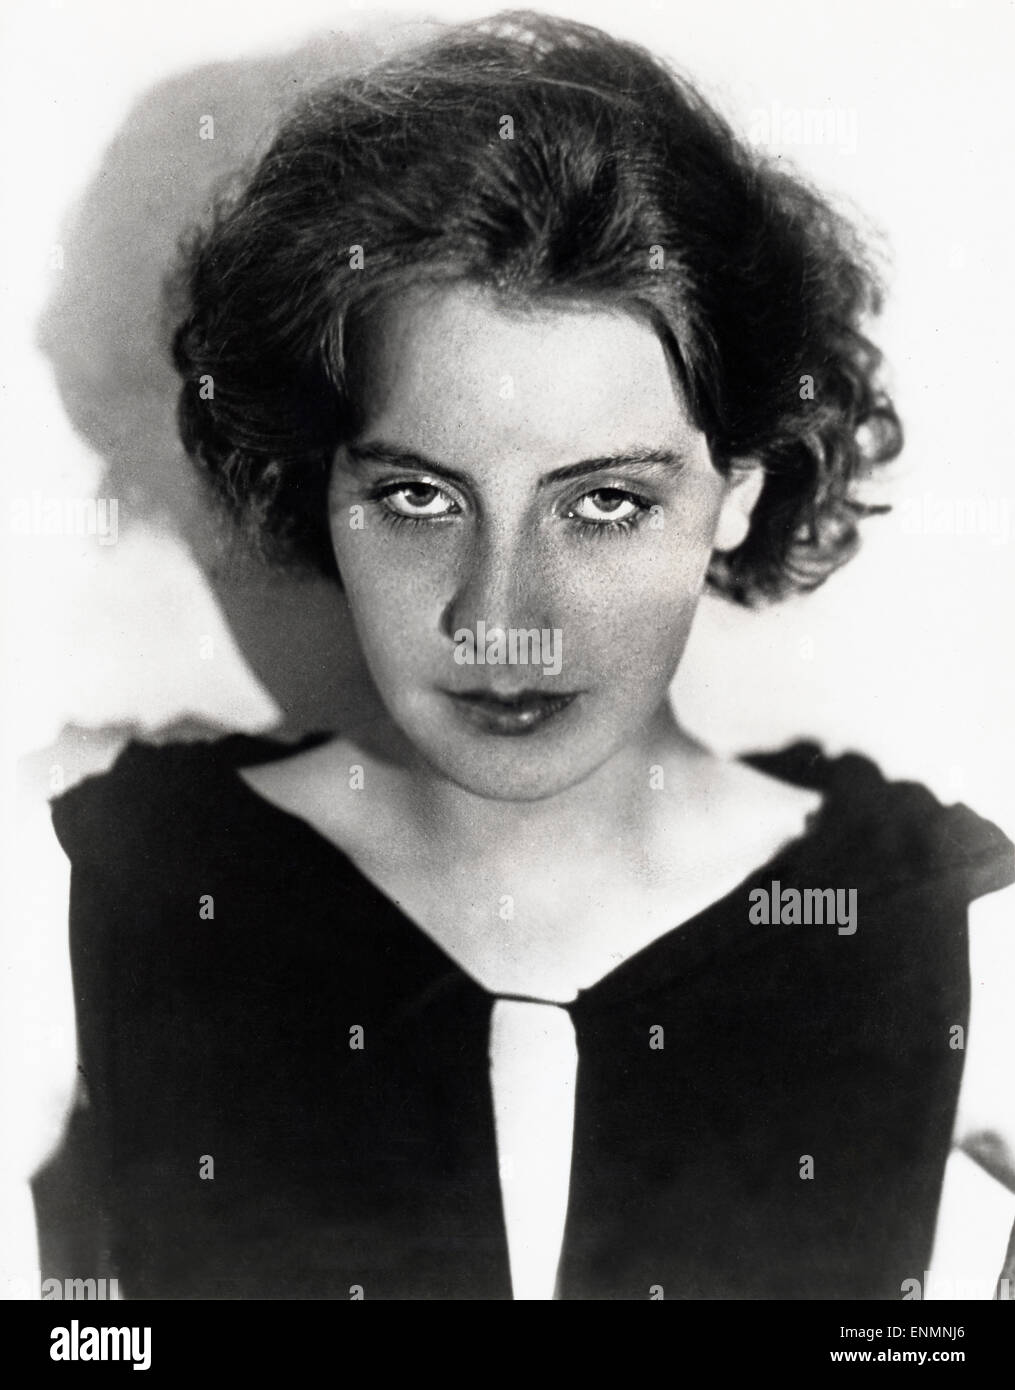 Die schwedische Filmschauspielerin Gerta Garbo (1905 - 1990) als junge Frau. Stock Photo